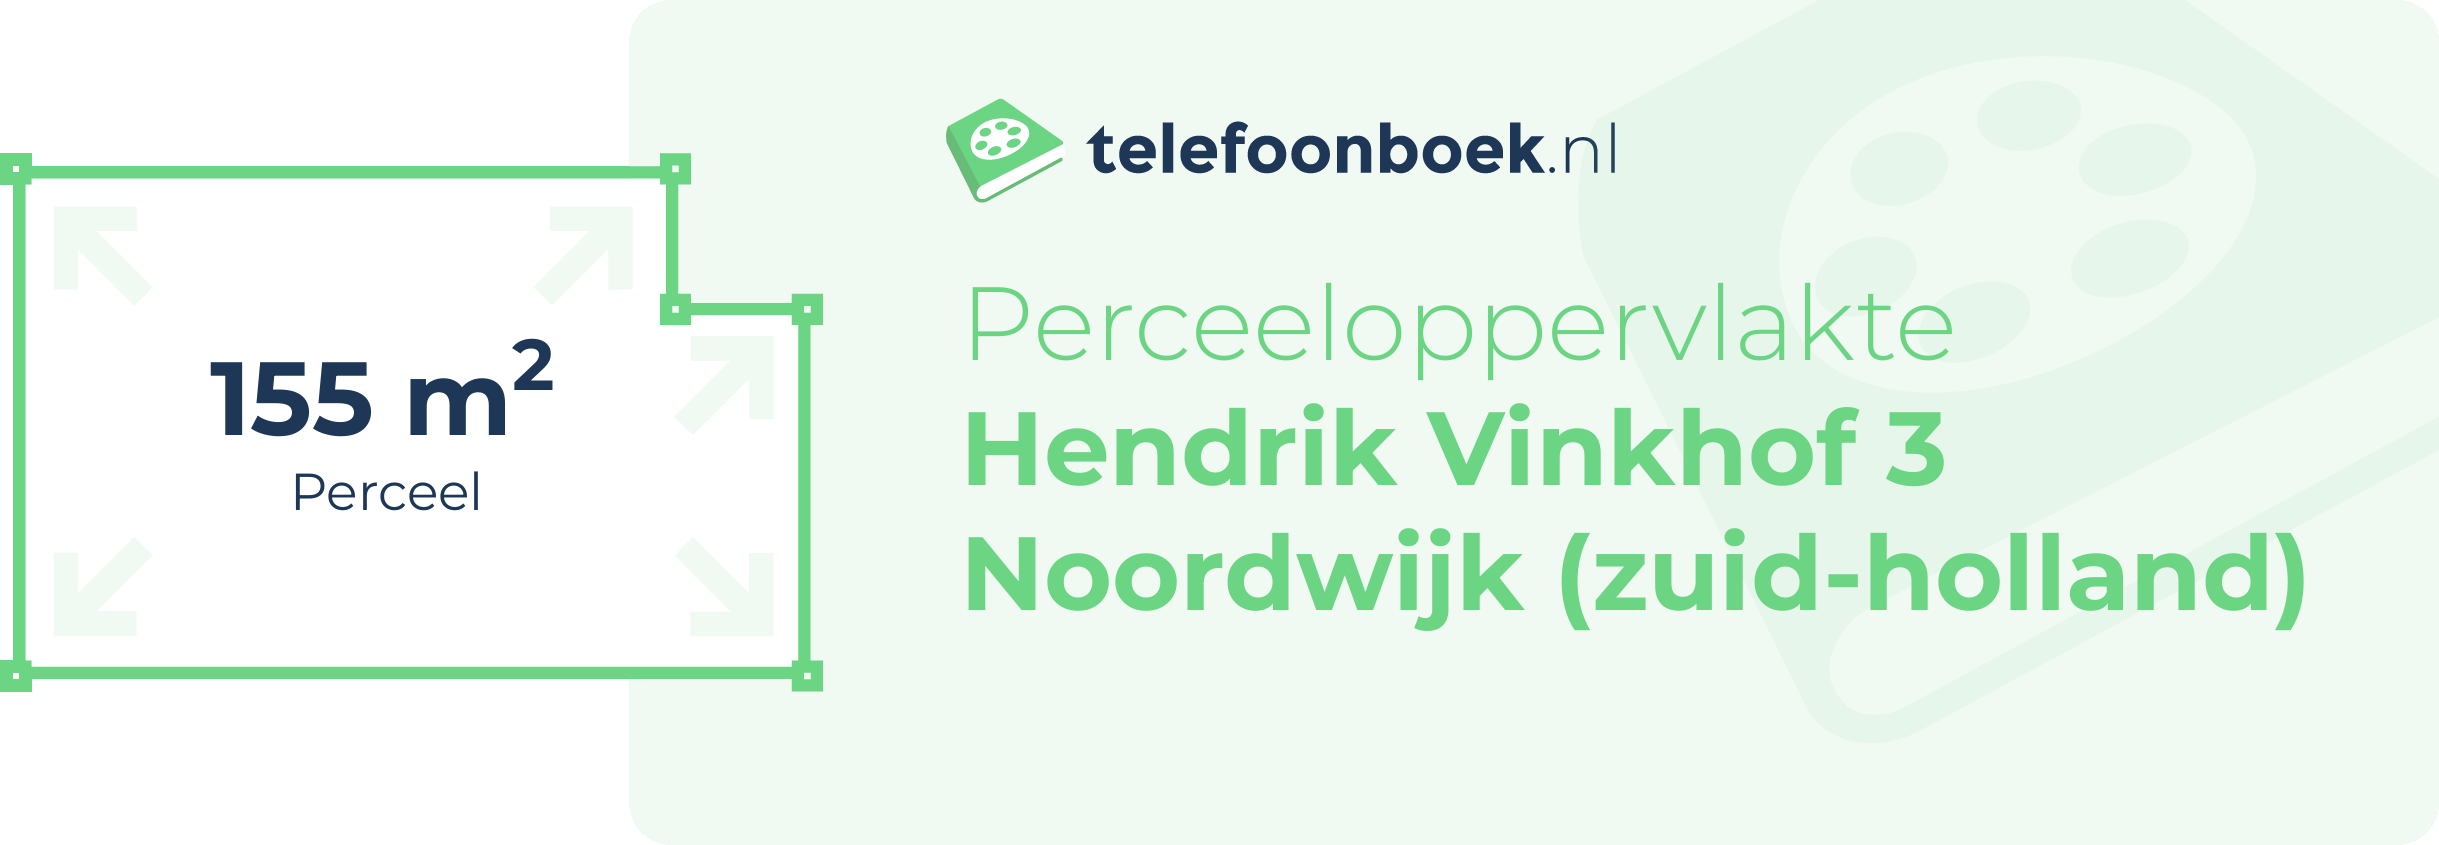 Perceeloppervlakte Hendrik Vinkhof 3 Noordwijk (Zuid-Holland)